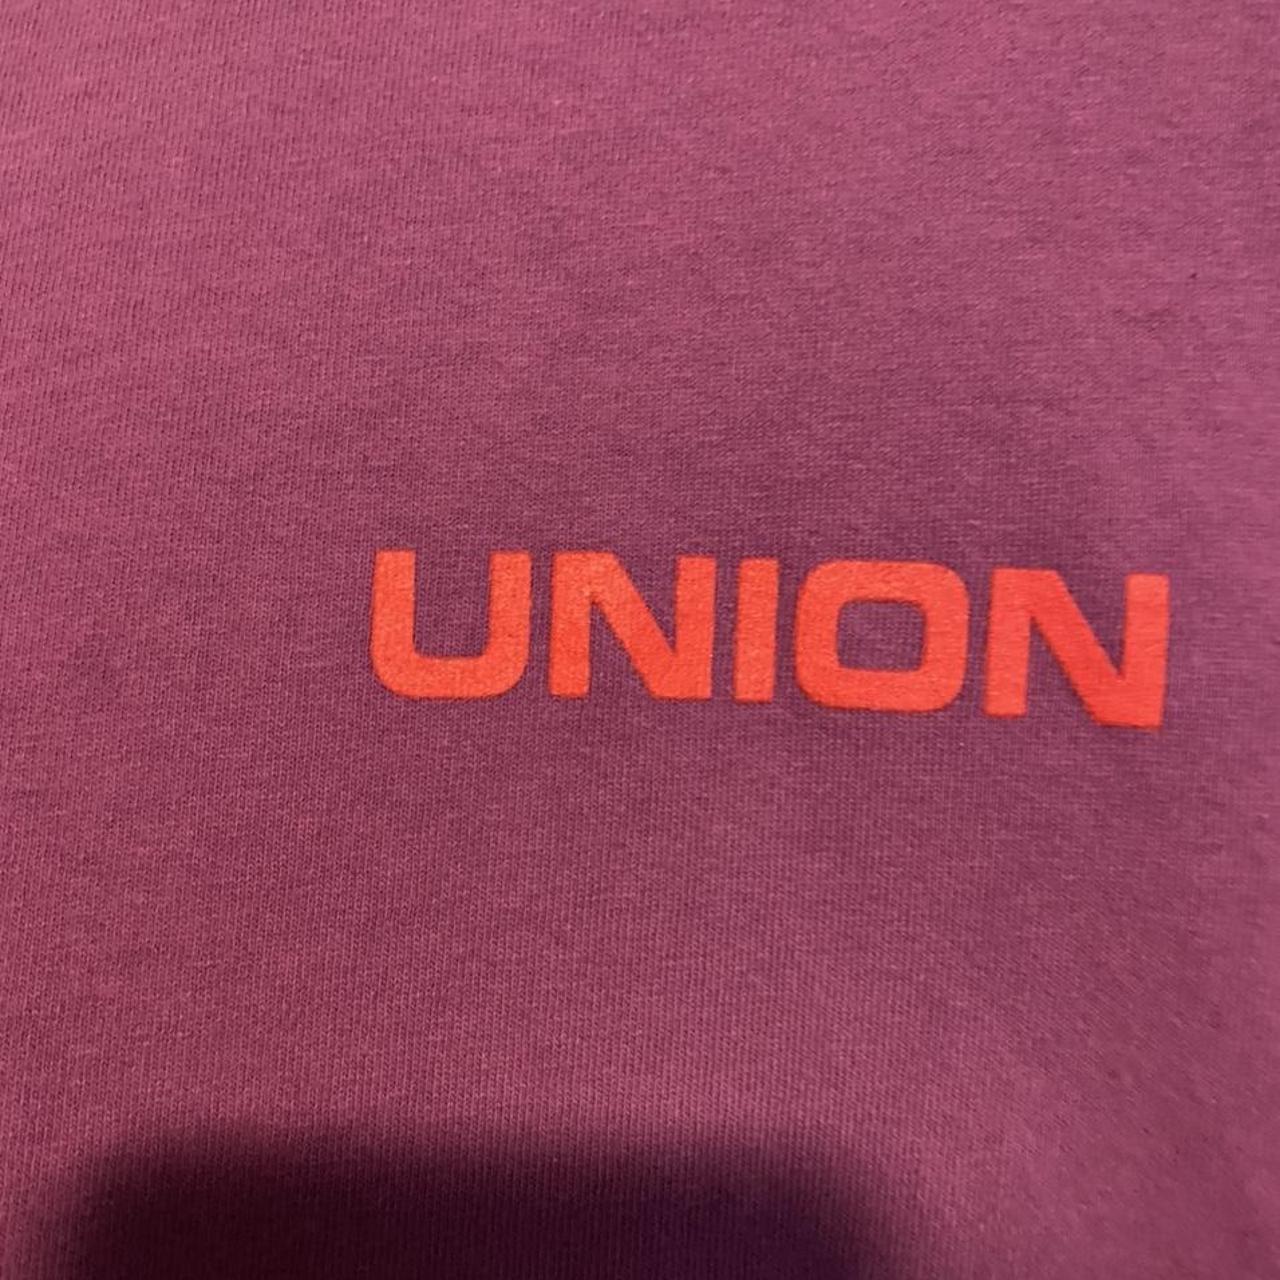 Noah x Union LA Core Logo Tee Collab tee back in... - Depop